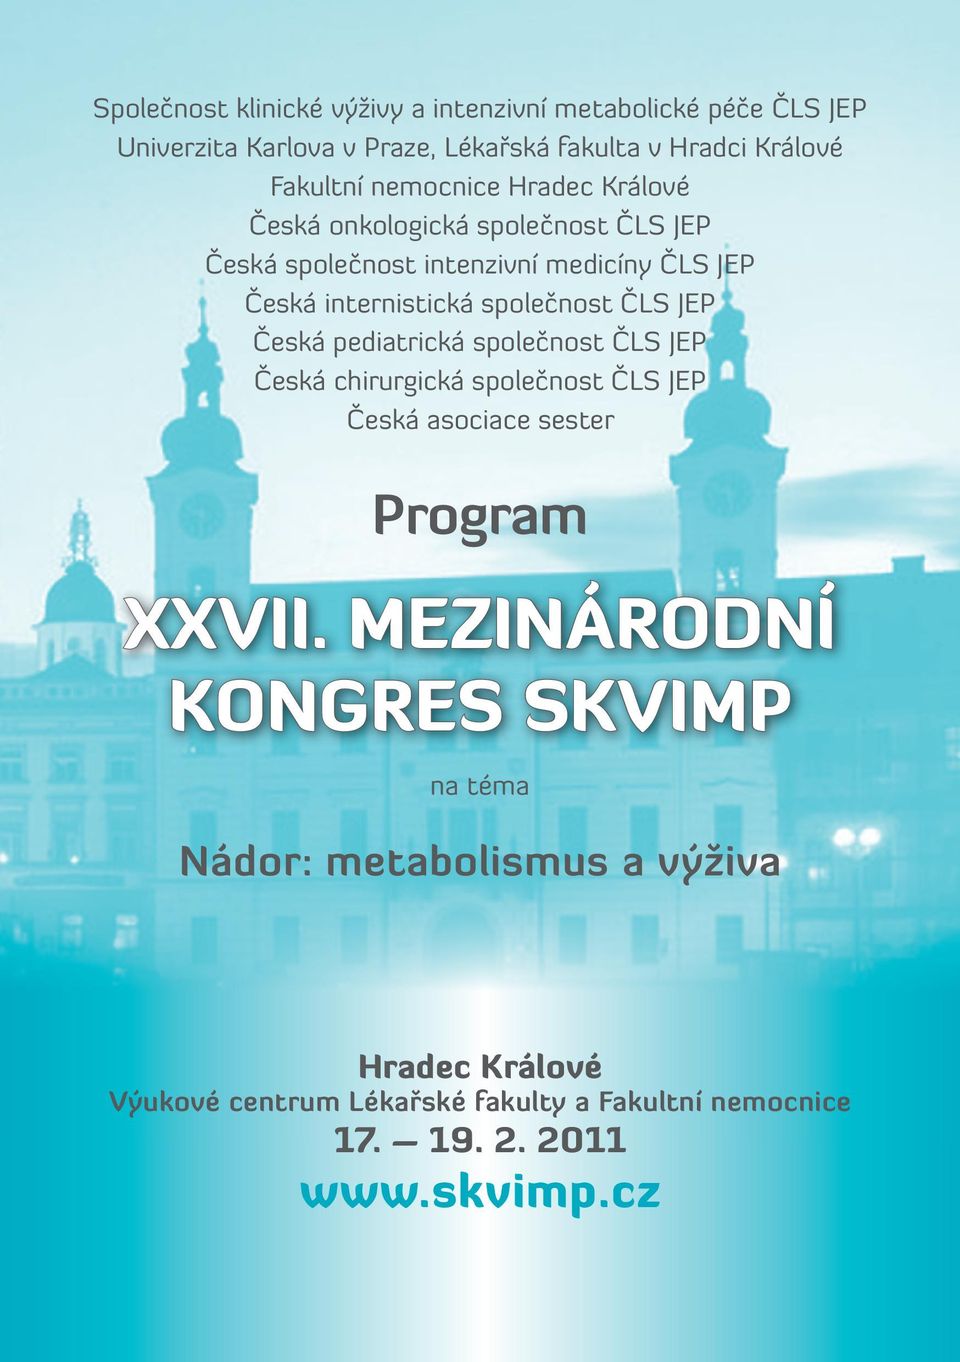 ČLS JEP Česká pediatrická společnost ČLS JEP Česká chirurgická společnost ČLS JEP Česká asociace sester Program XXVII.